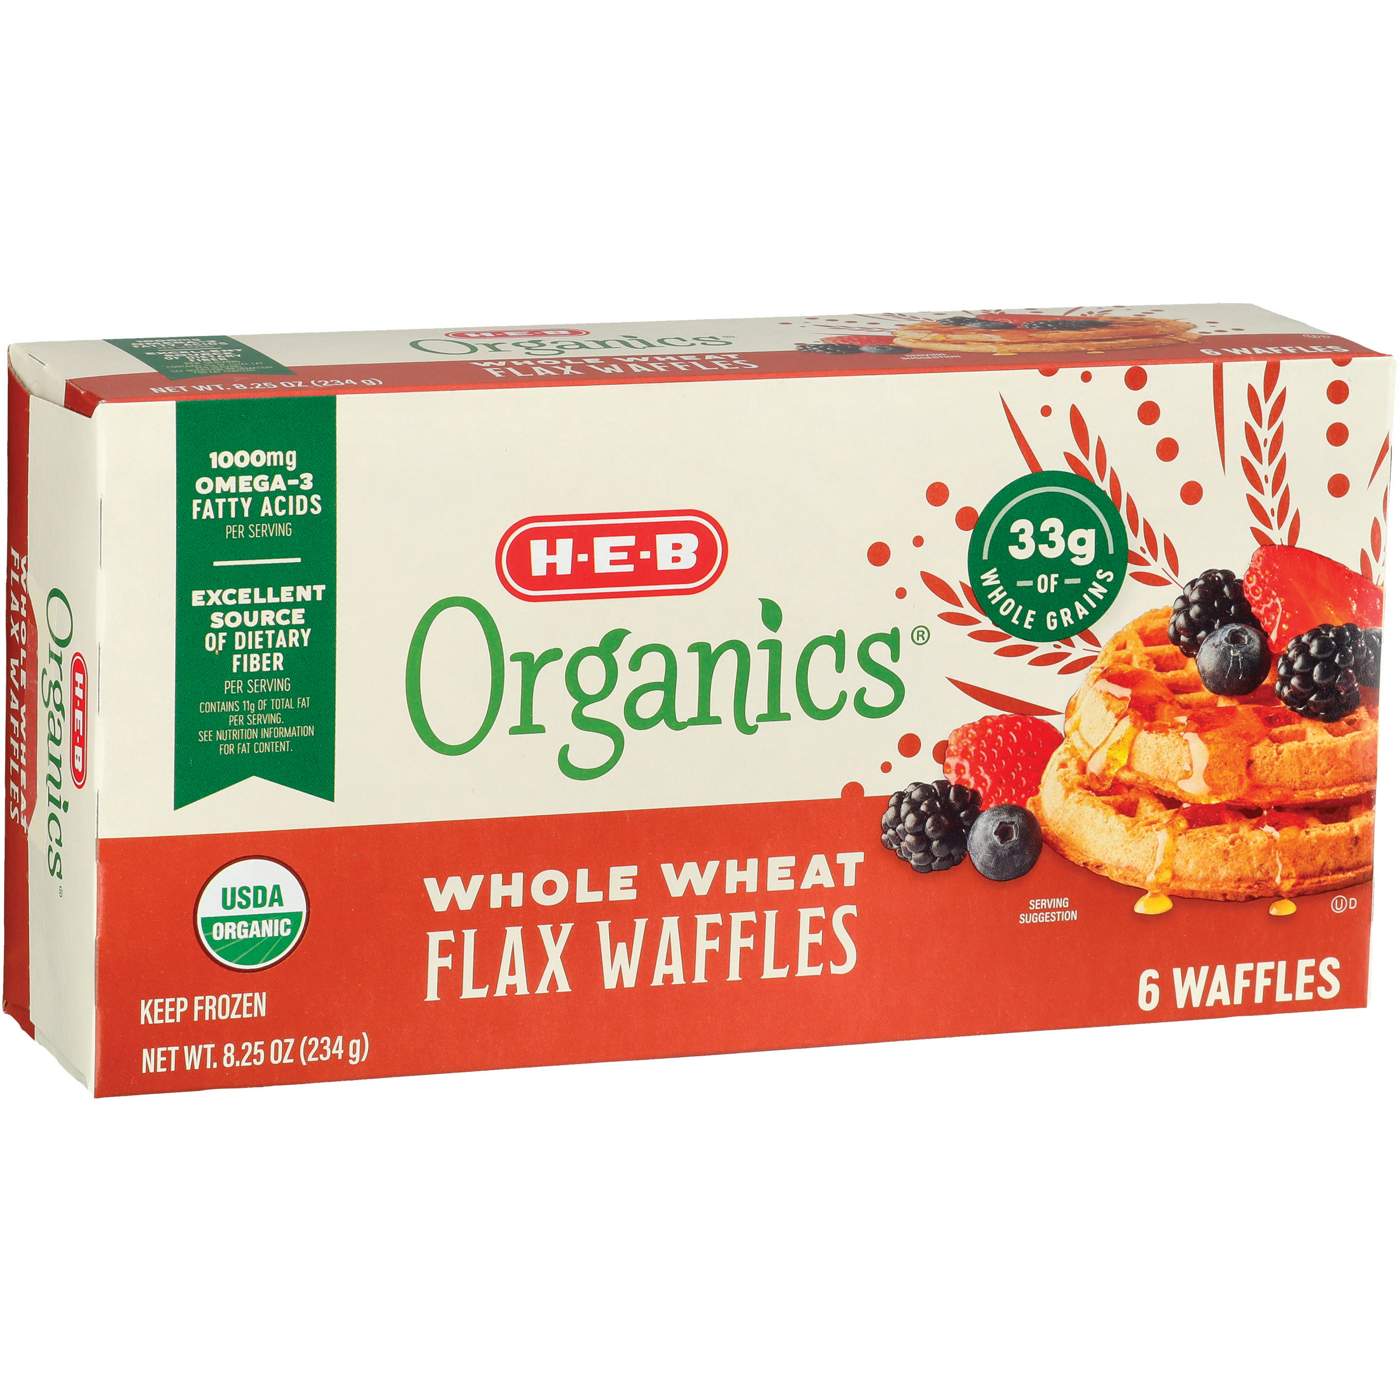 H-E-B Organics Frozen Waffles - Whole Wheat Flax; image 2 of 2